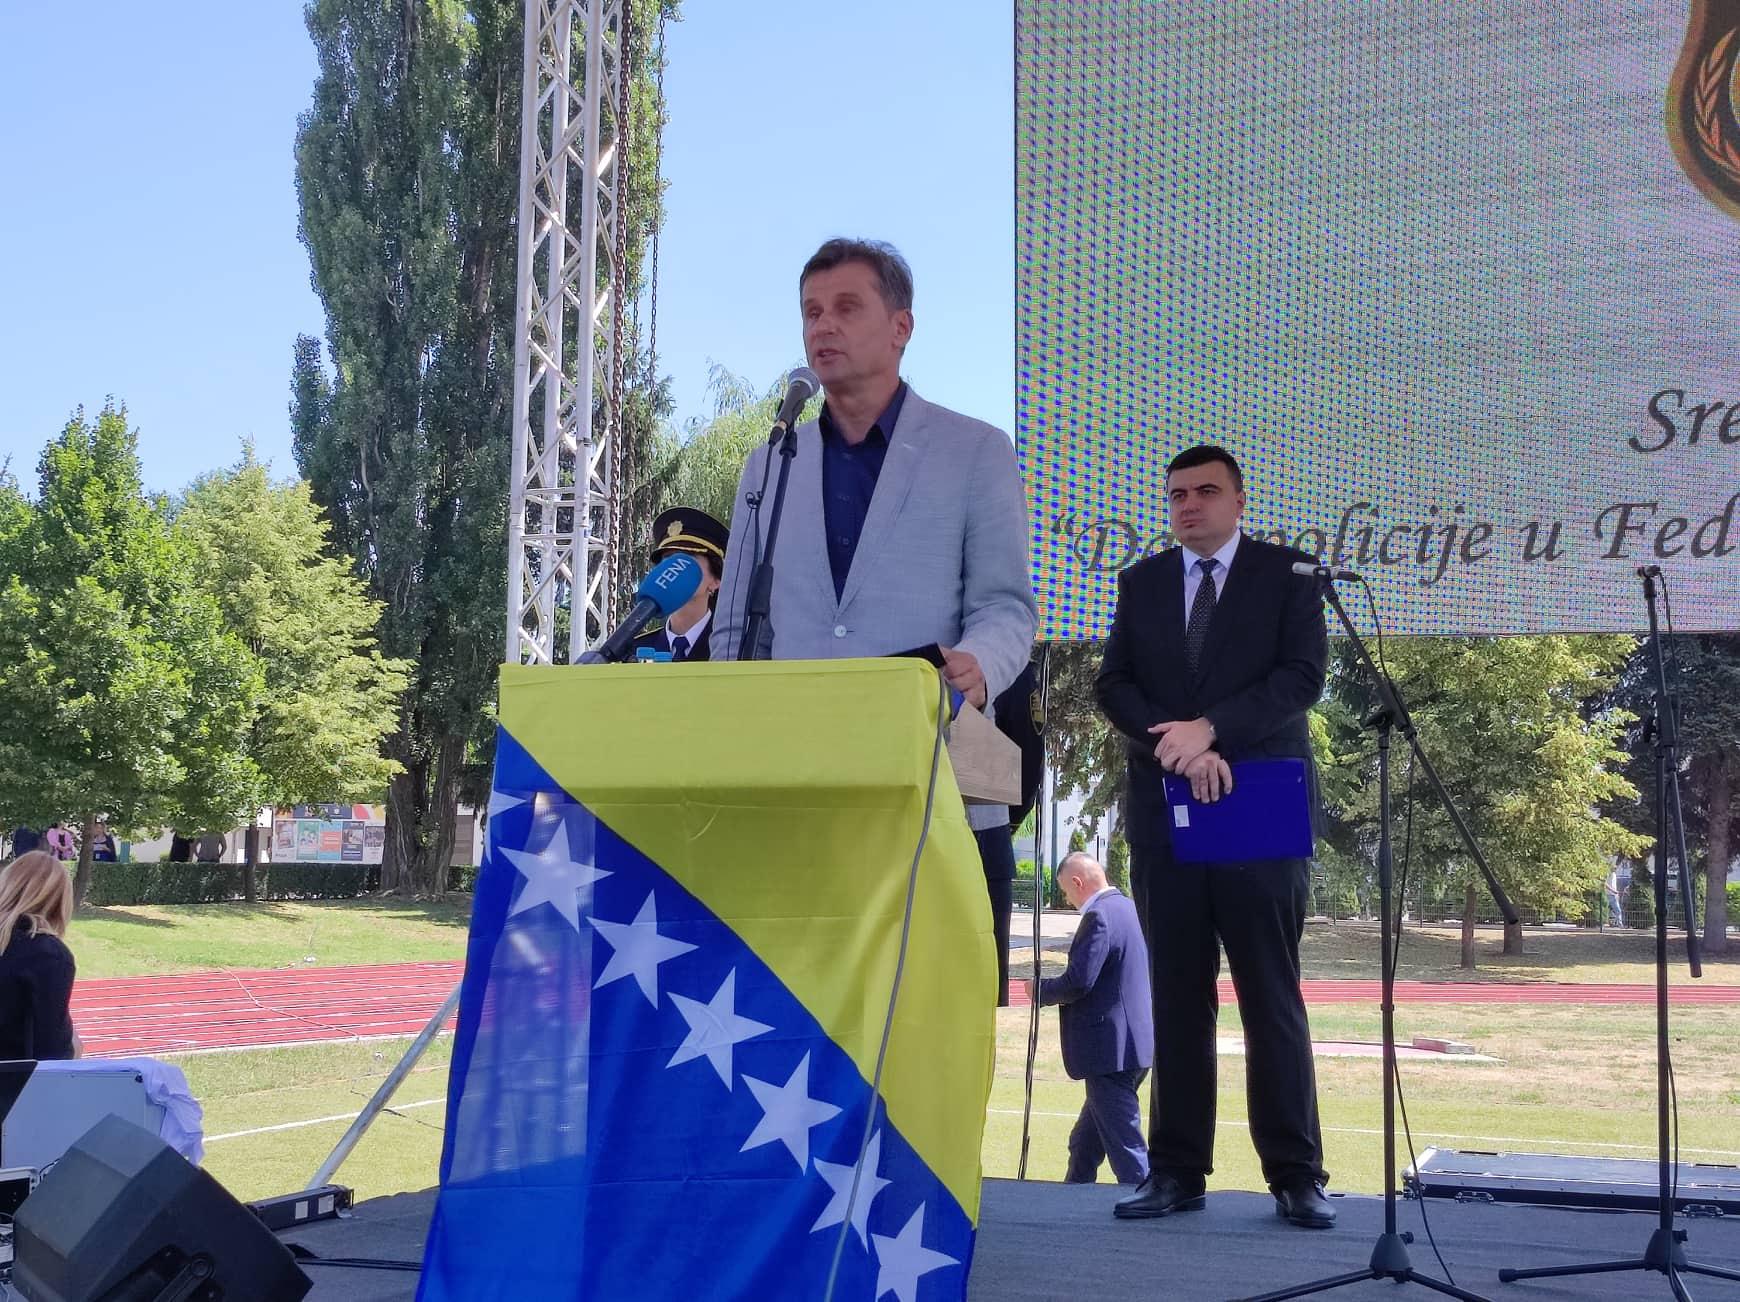 Novalić: Uvjeravam vas da u Vladi FBiH imate iskrenog prijatelja koji vas podržava danas i koji će vas nastaviti podržavati - Avaz